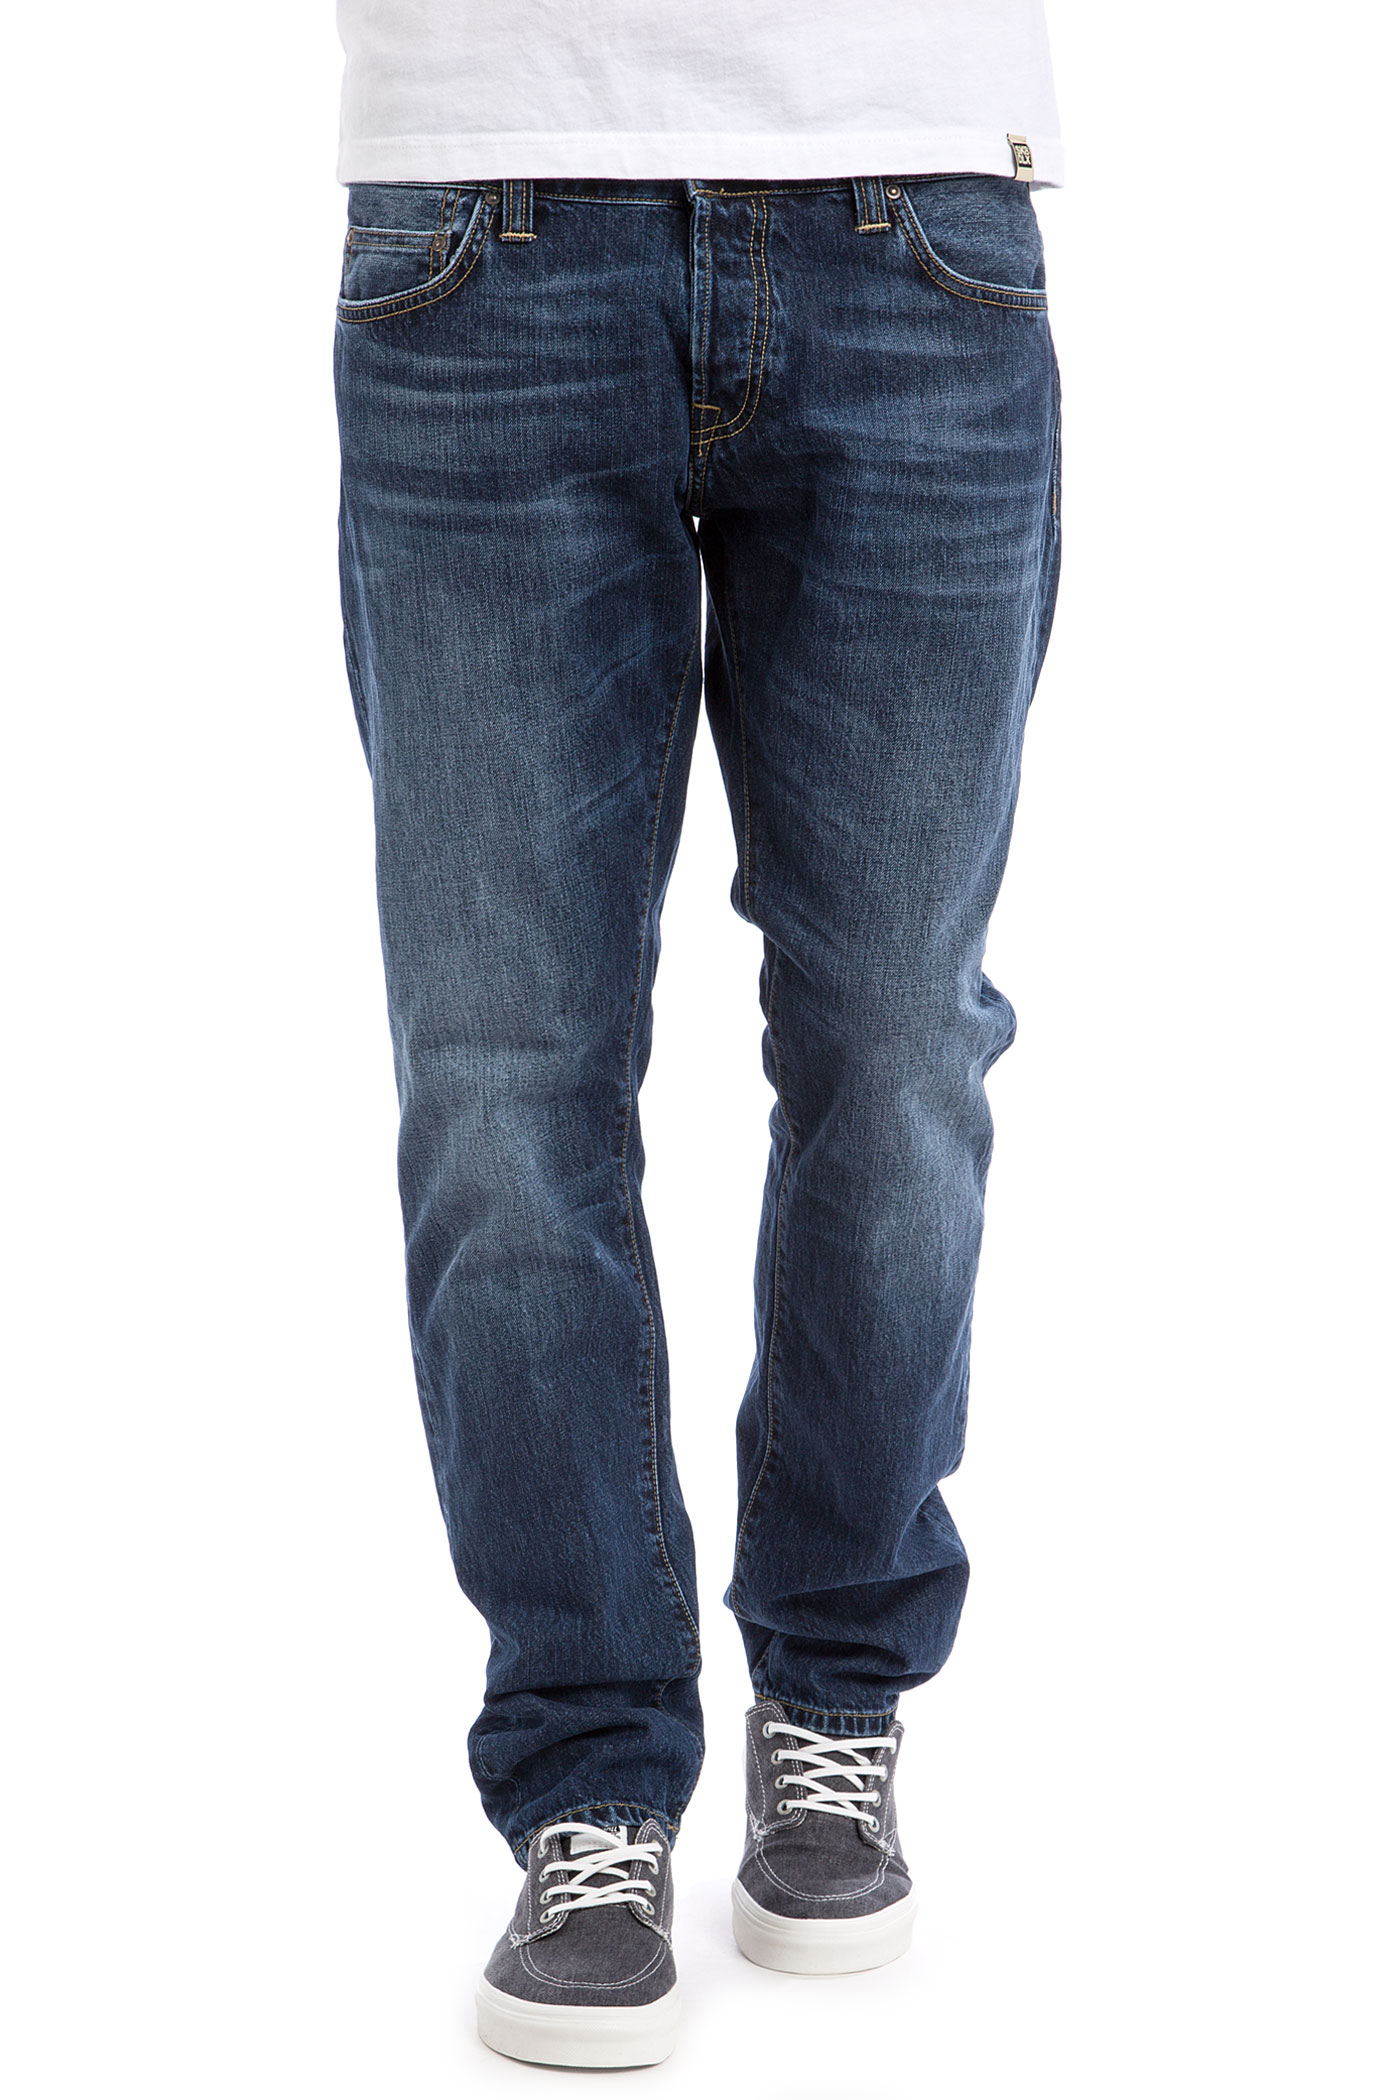 carhartt buccaneer jeans